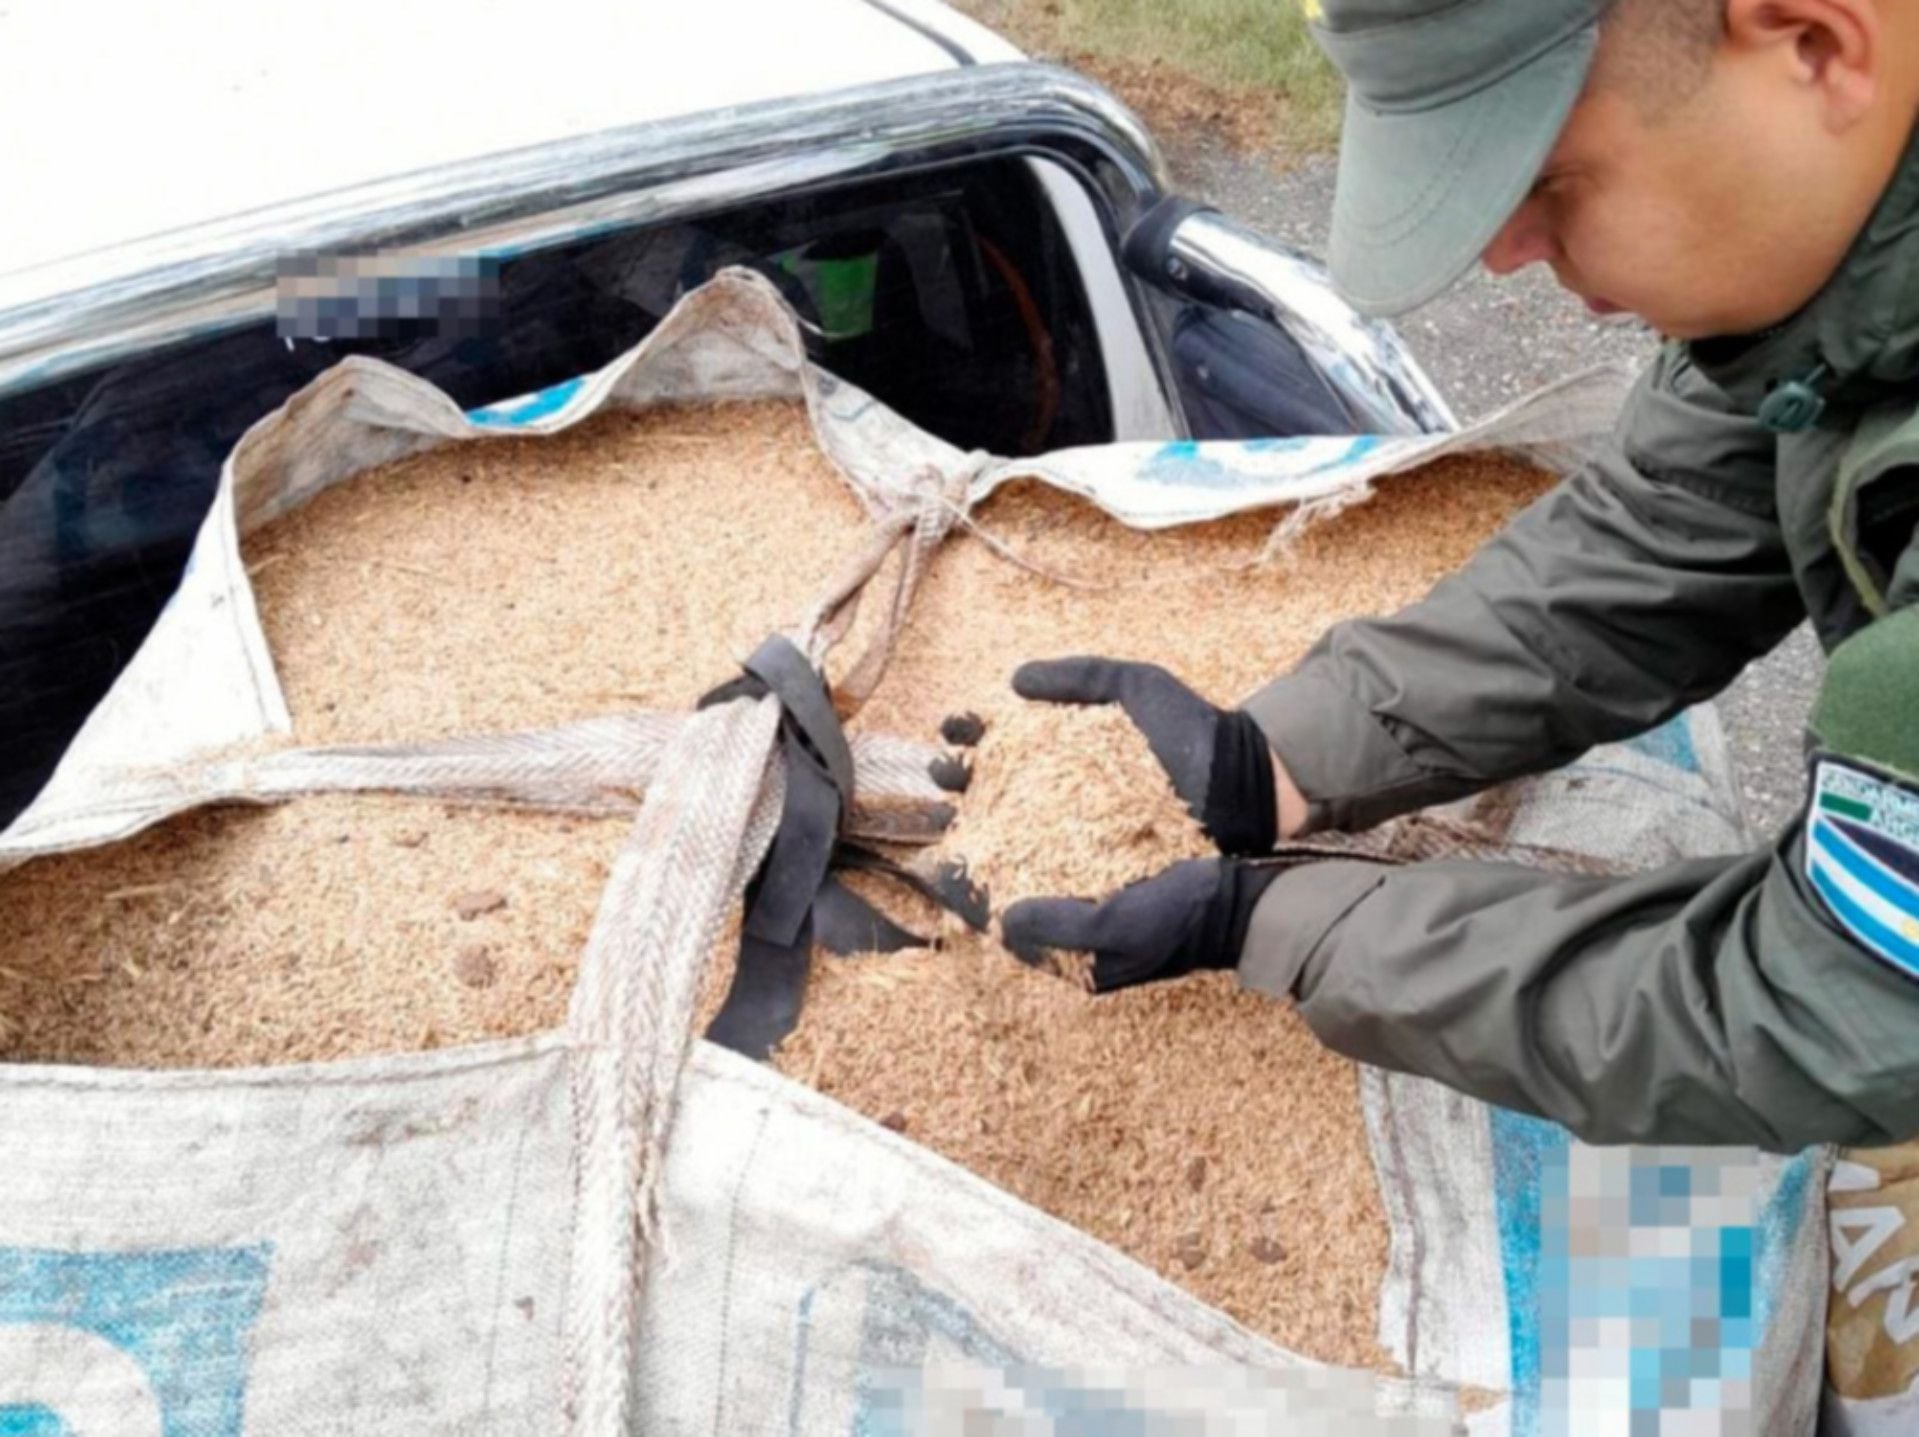 Transportada en dos camiones, Gendarmería decomisó en Córdoba más de 60 toneladas de cereales (GNA)